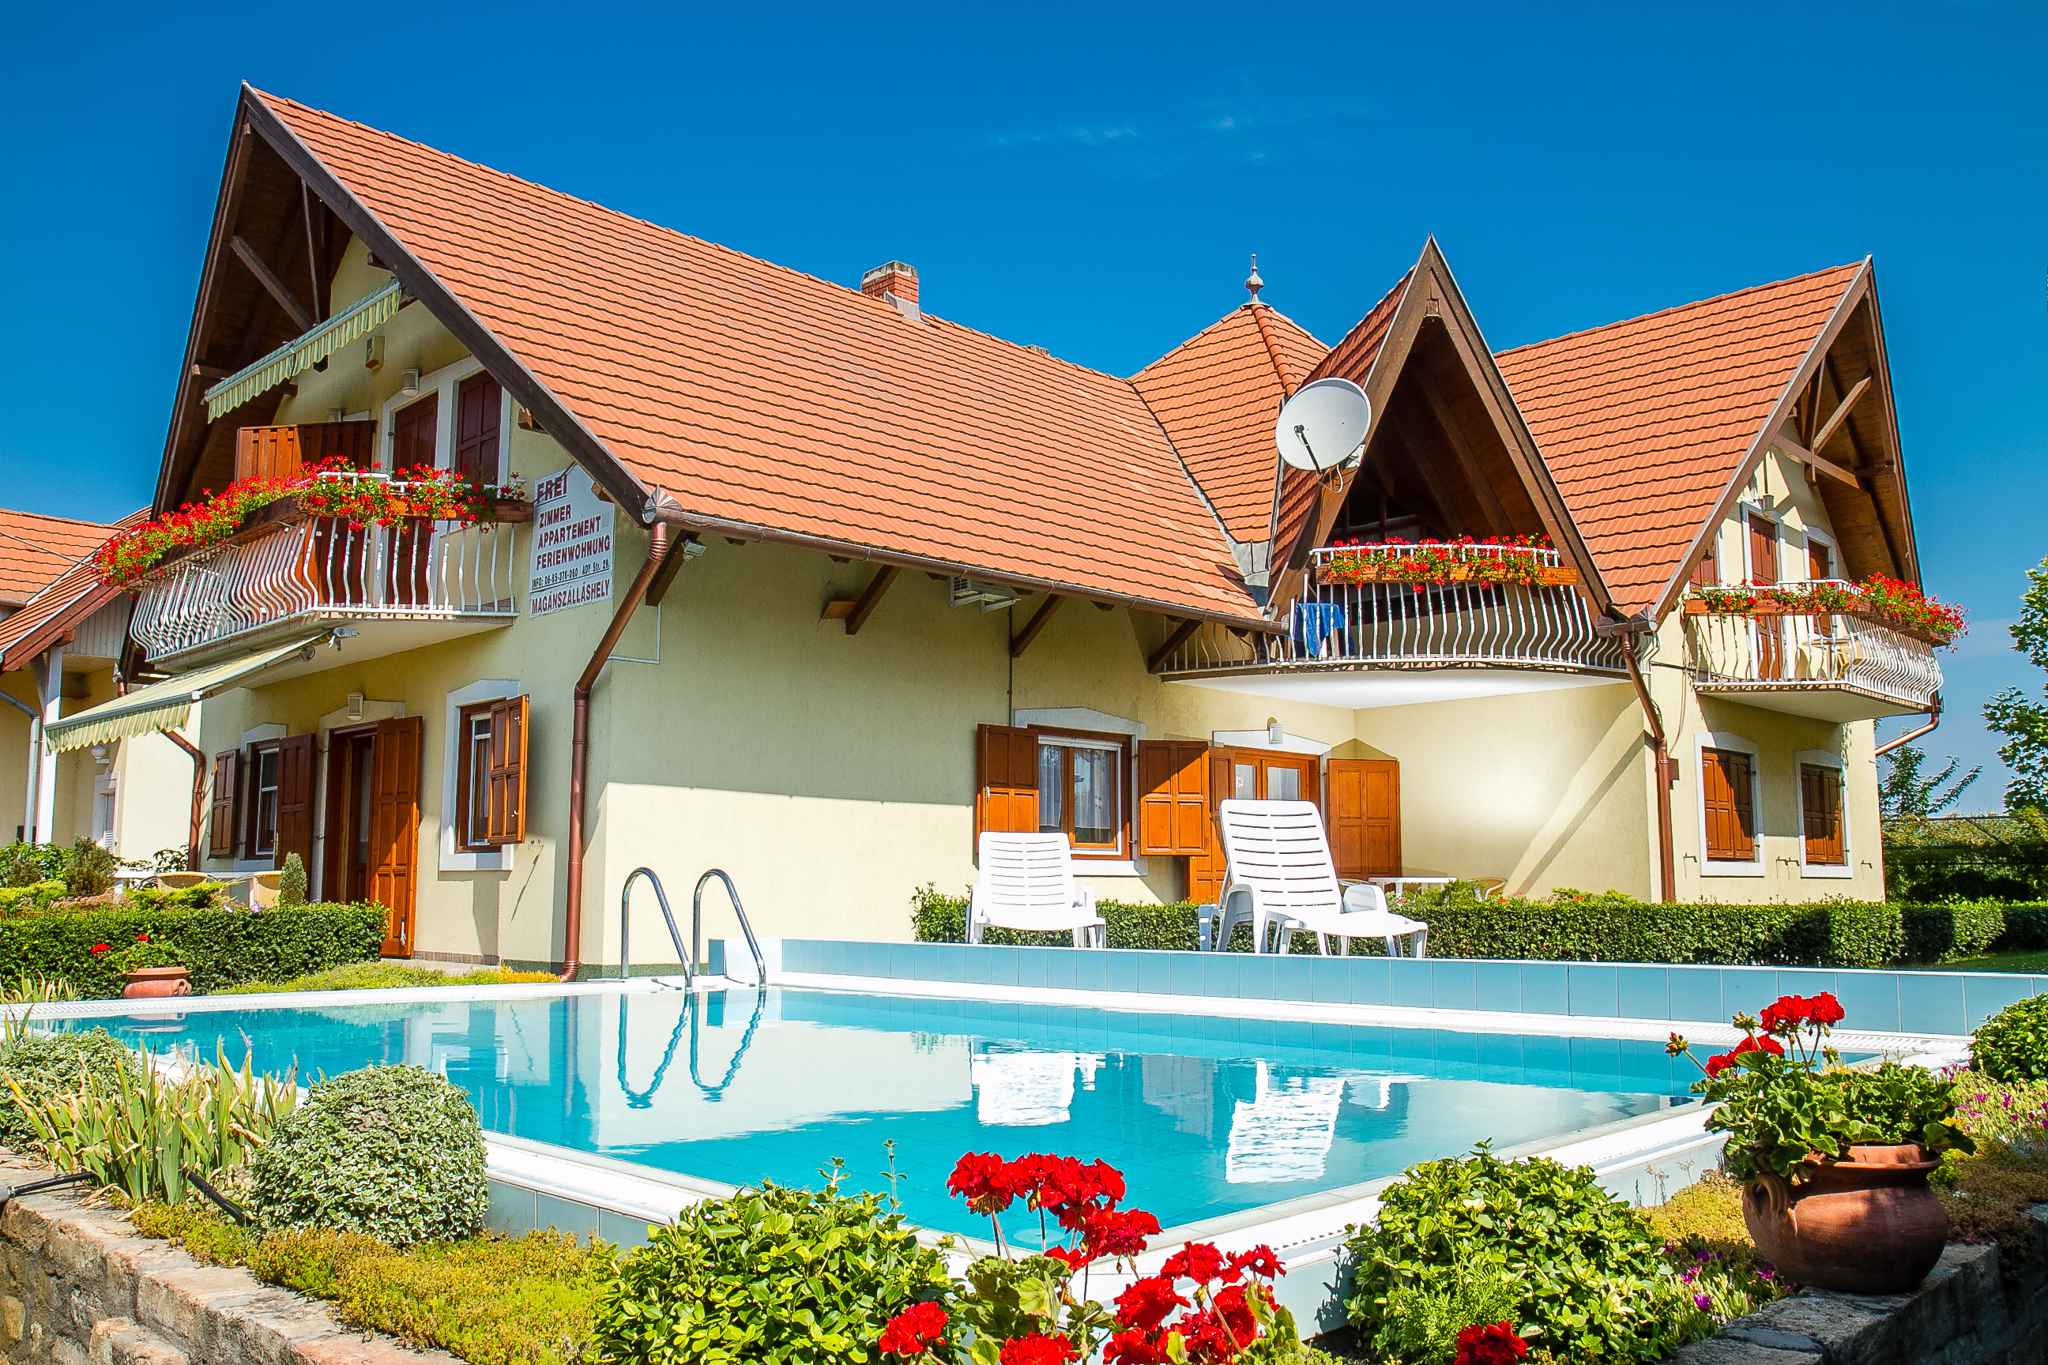 Ferienwohnung in Seenähe, mit Pool  in Ungarn